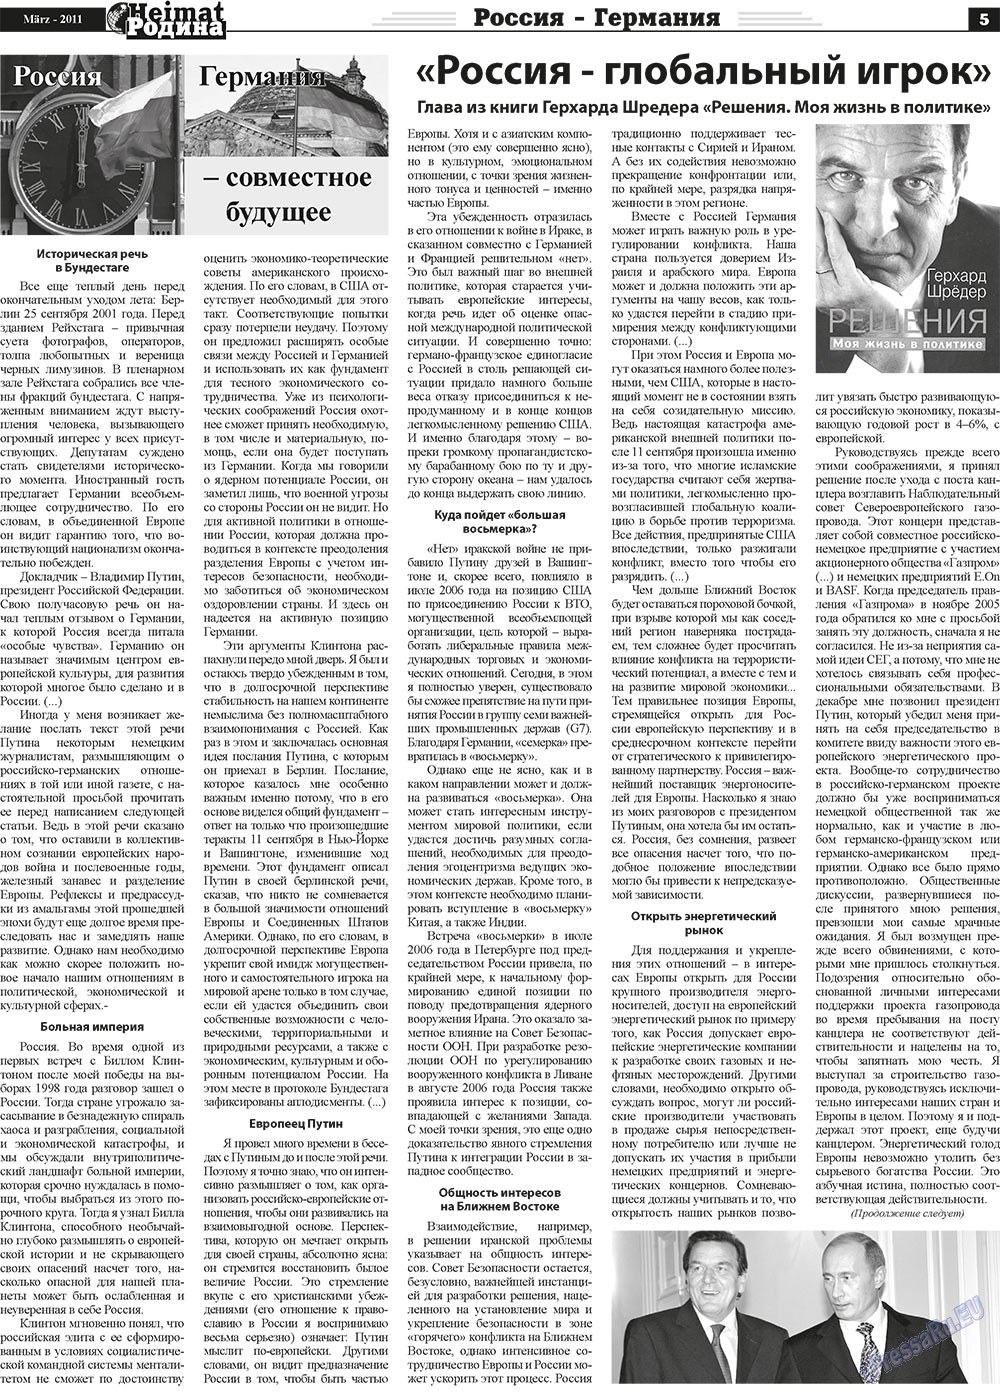 Heimat-Родина (газета). 2011 год, номер 3, стр. 5